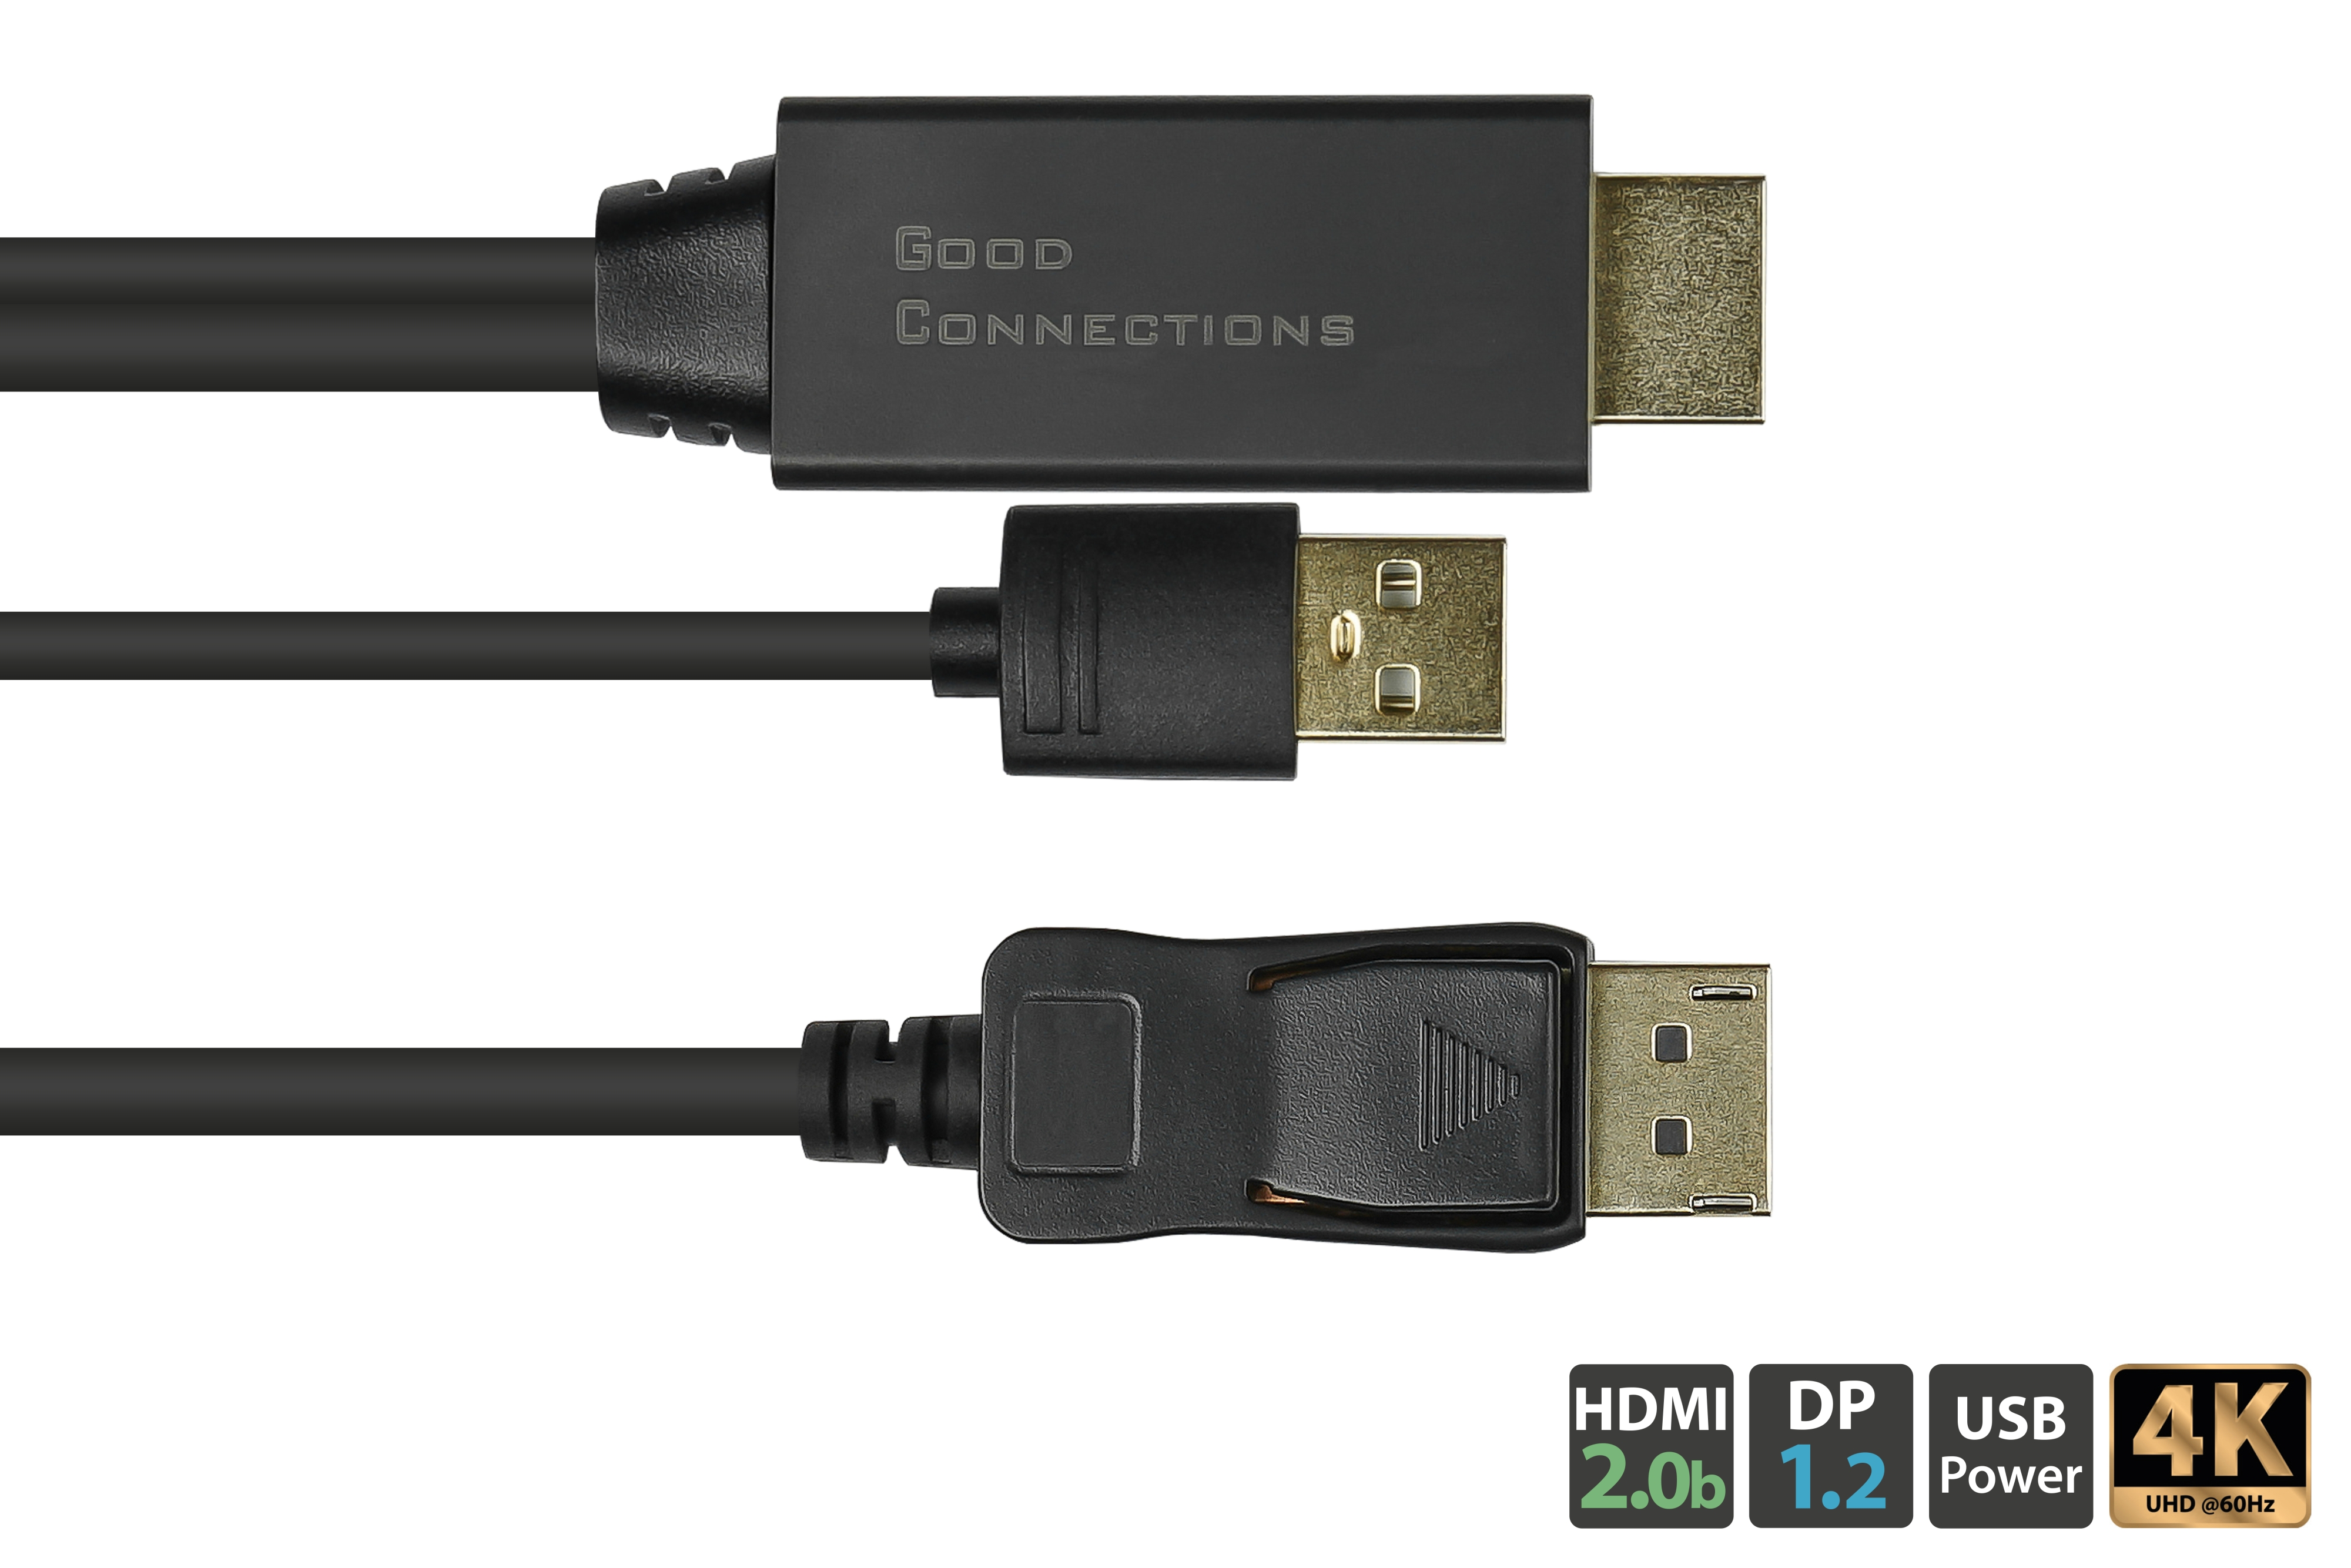 GOOD CONNECTIONS 1.2 Power Anschlusskabel + 2.0b Stecker, Displayport, 1m, schwarz, 1 an HDMI Stecker USB m